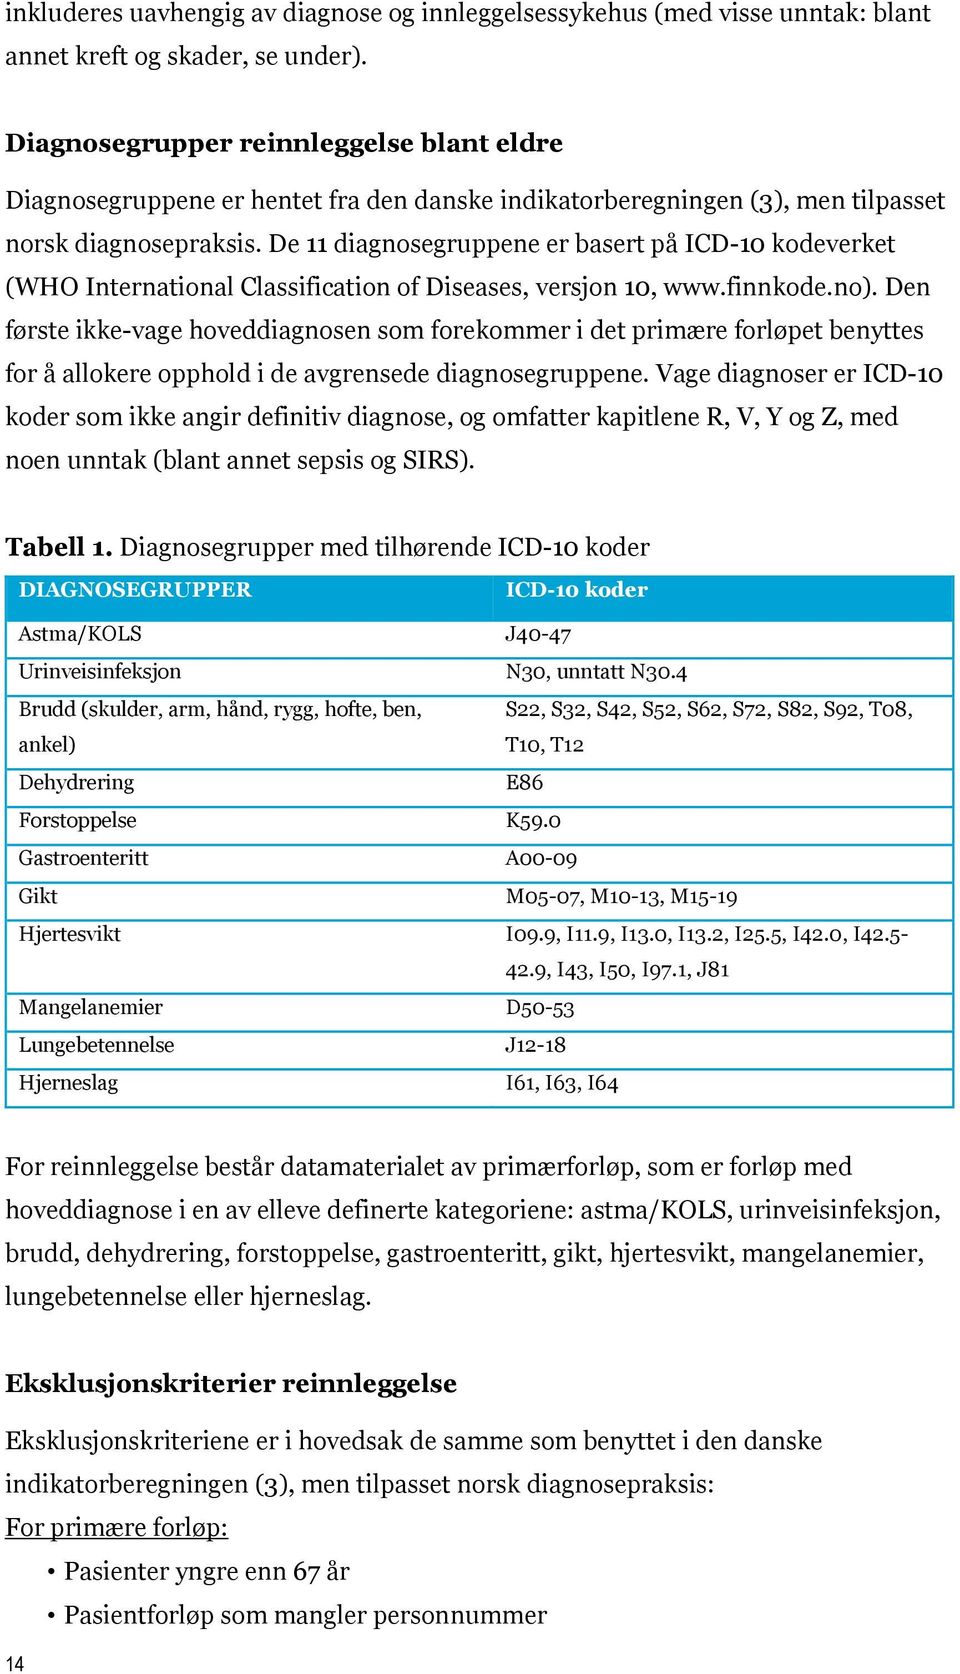 De 11 diagnosegruppene er basert på ICD-10 kodeverket (WHO International Classification of Diseases, versjon 10, www.finnkode.no).